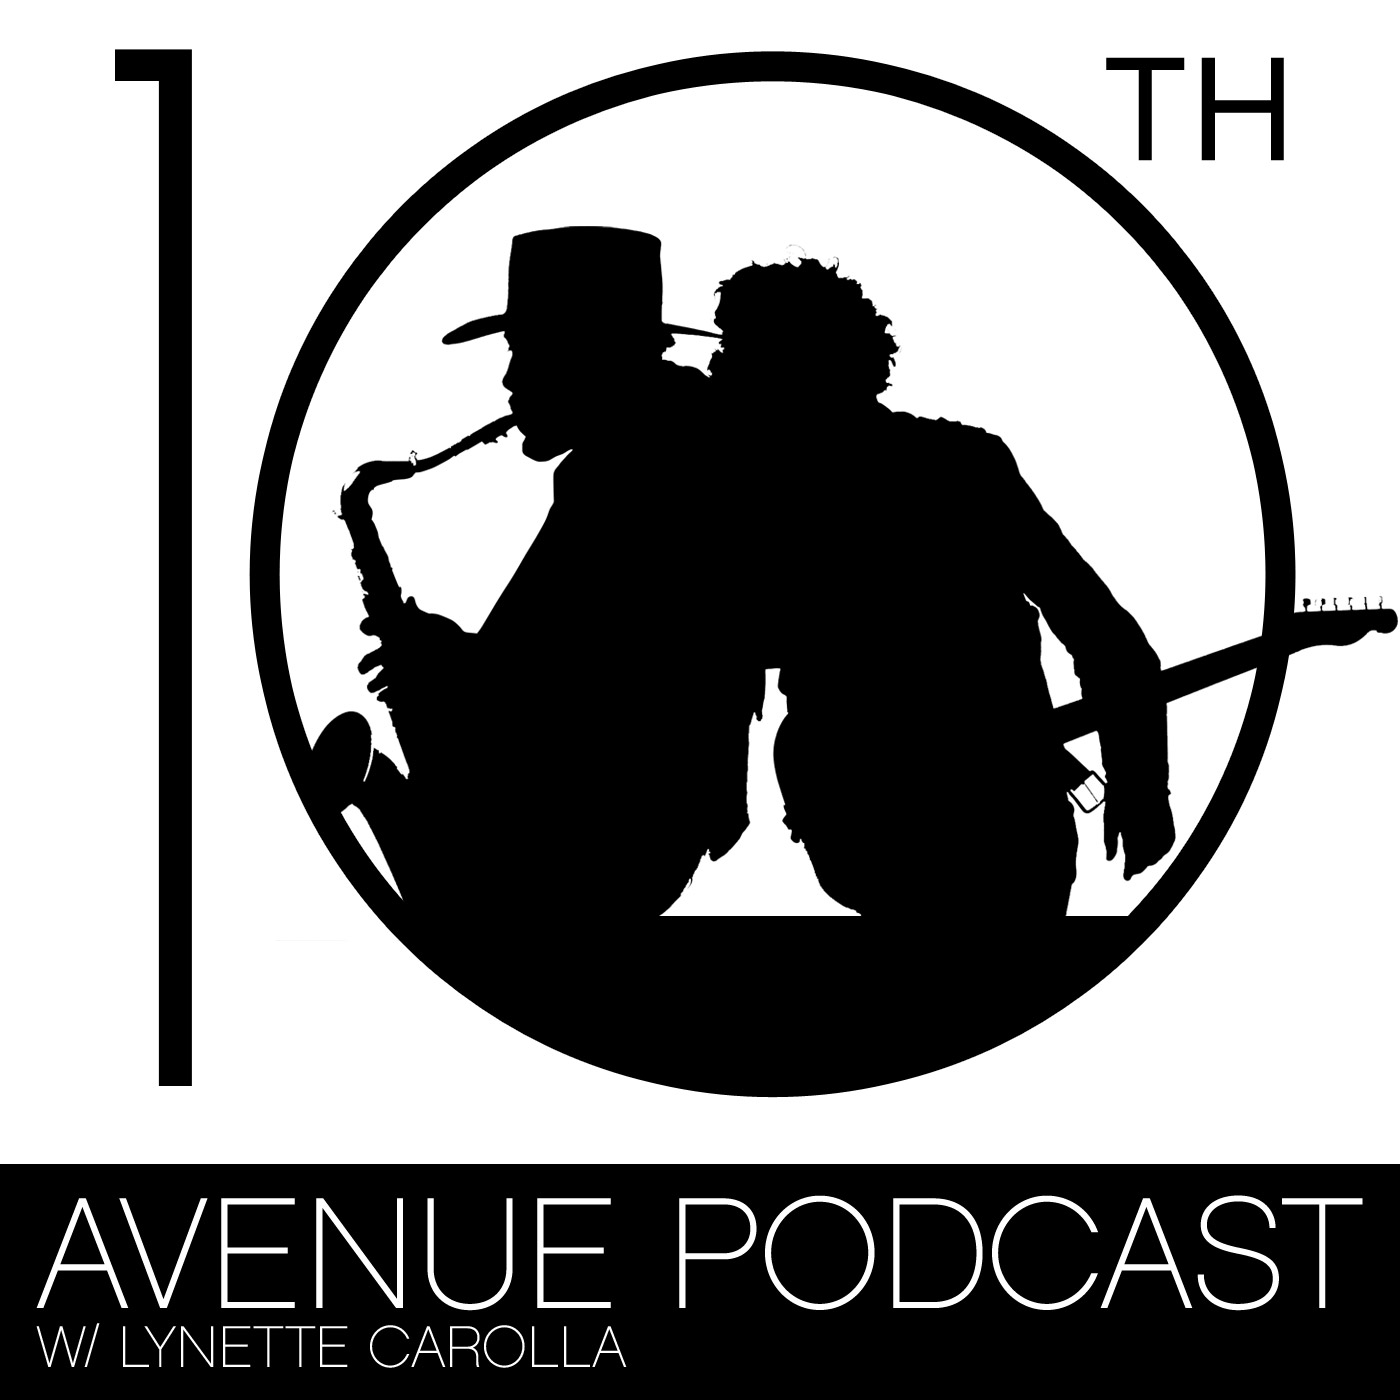 10th Avenue Podcast